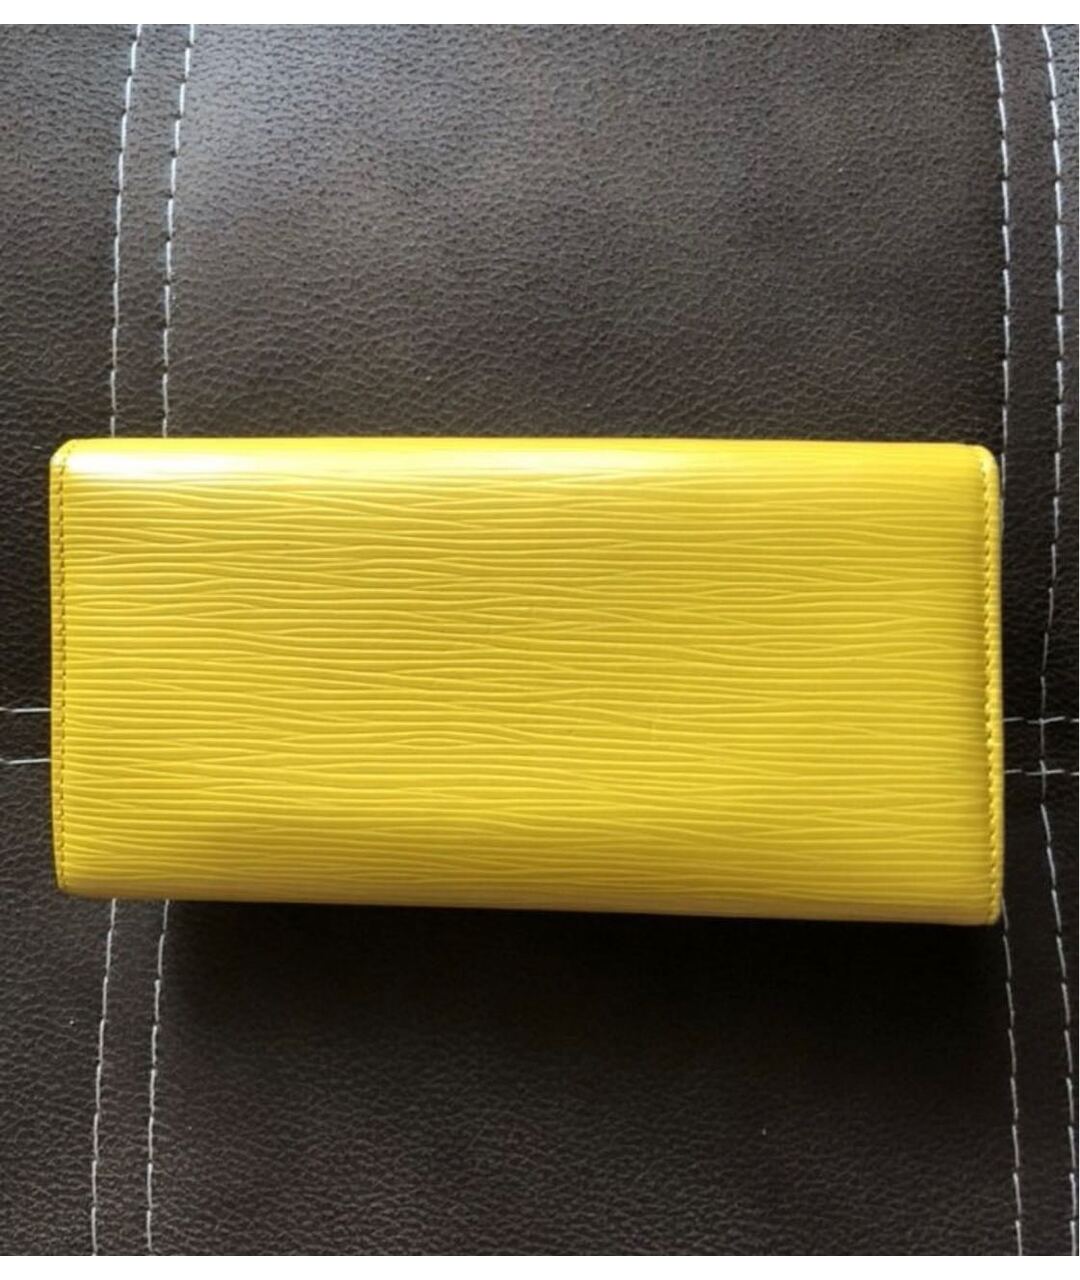 LOUIS VUITTON PRE-OWNED Желтый кожаный кошелек, фото 3